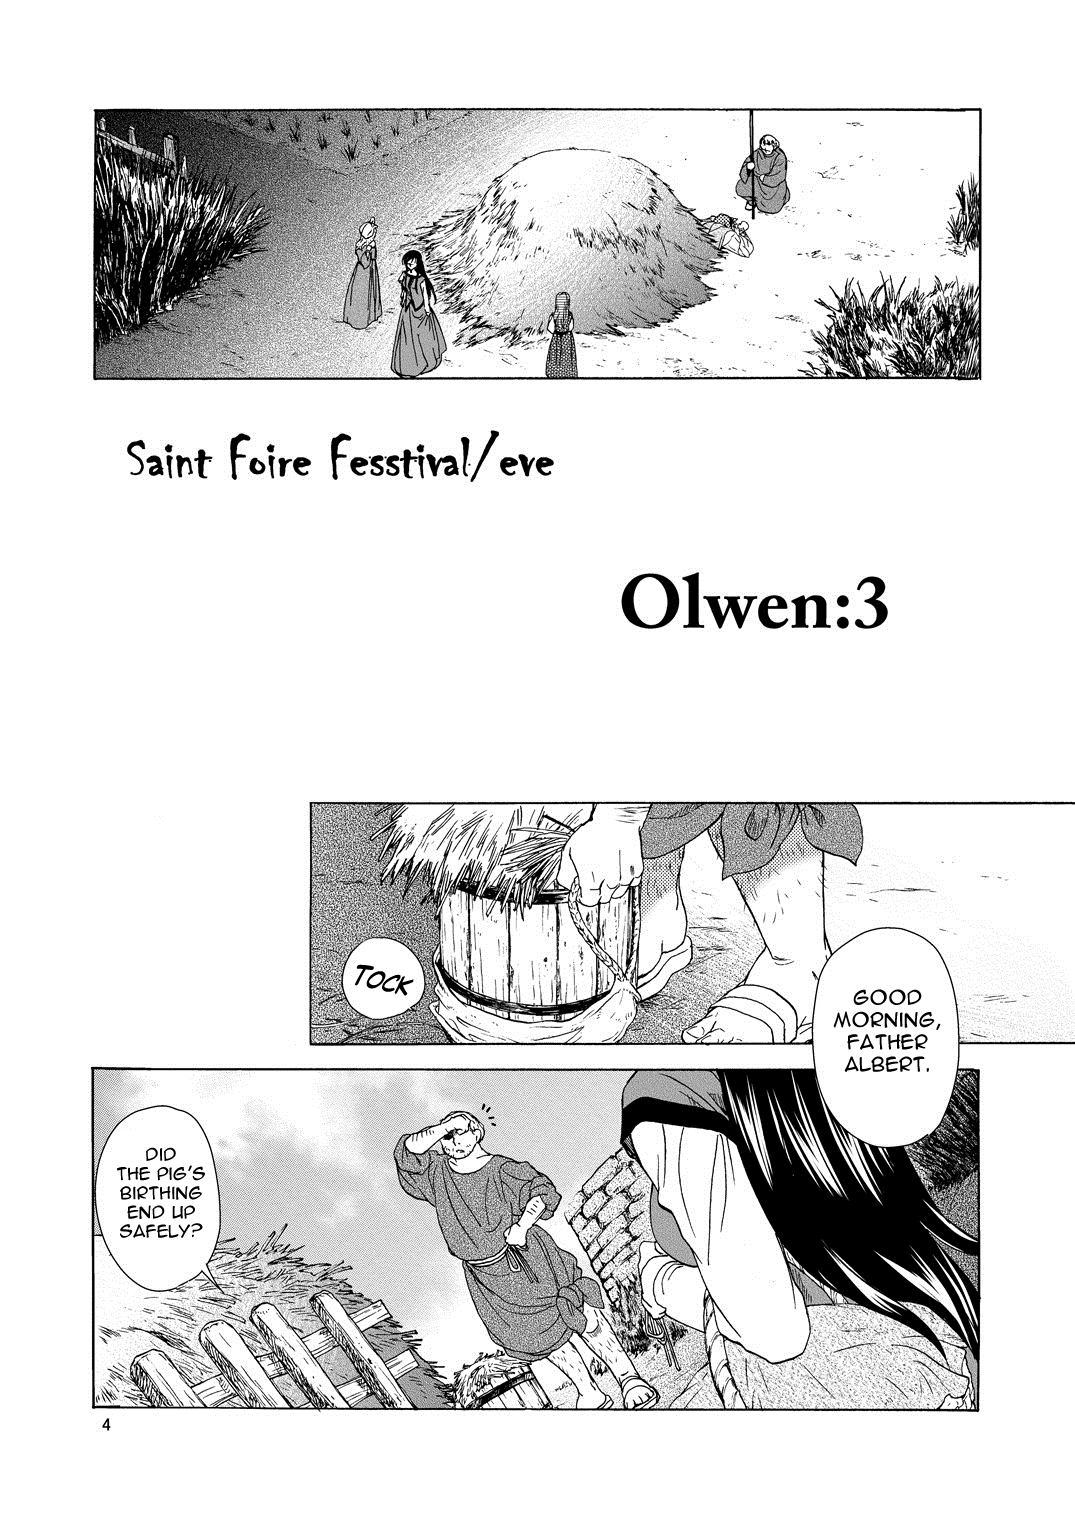 [床子屋 (HEIZO, 鬼頭えん)] Saint Foire Festival /eve Olwen:3 [英訳] [DL版]